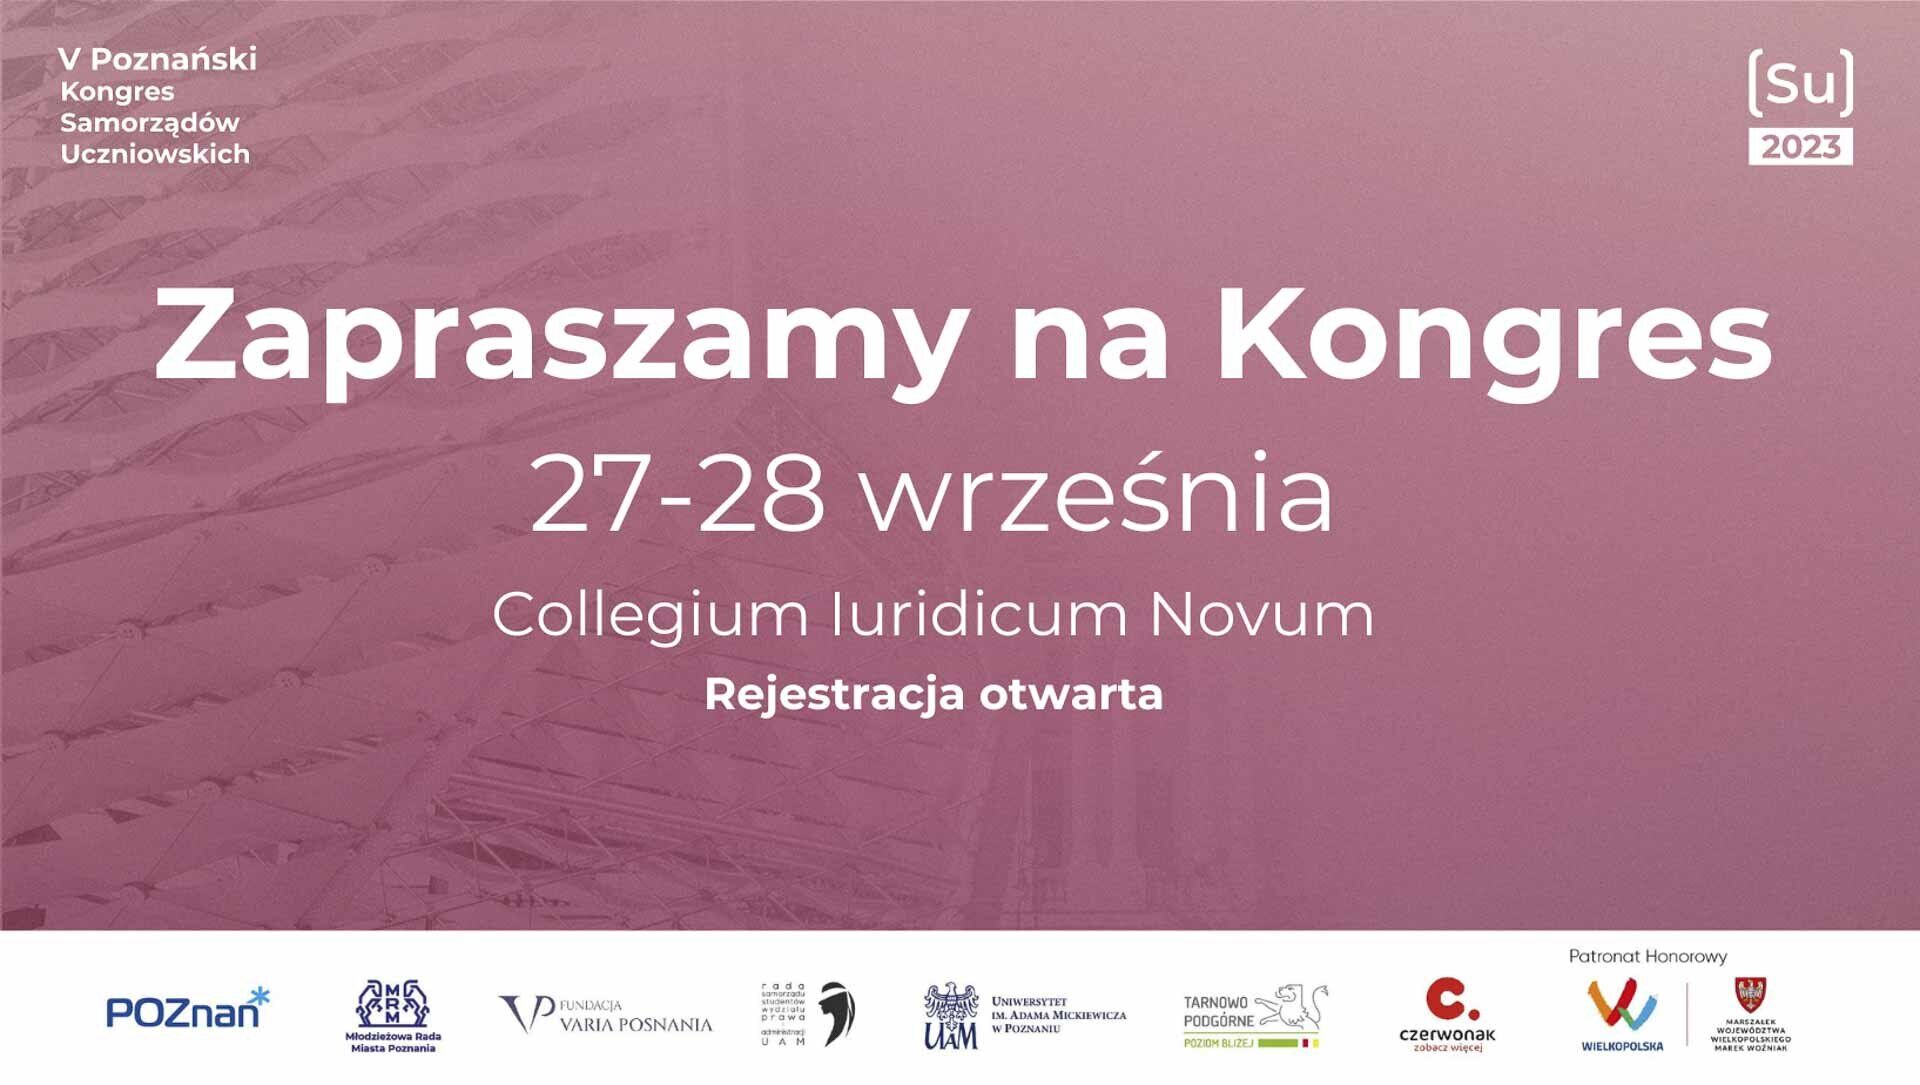 Poznański Kongres Samorządów Uczniowskich 2023, Fundacja Varia Posnania, miasto Poznań